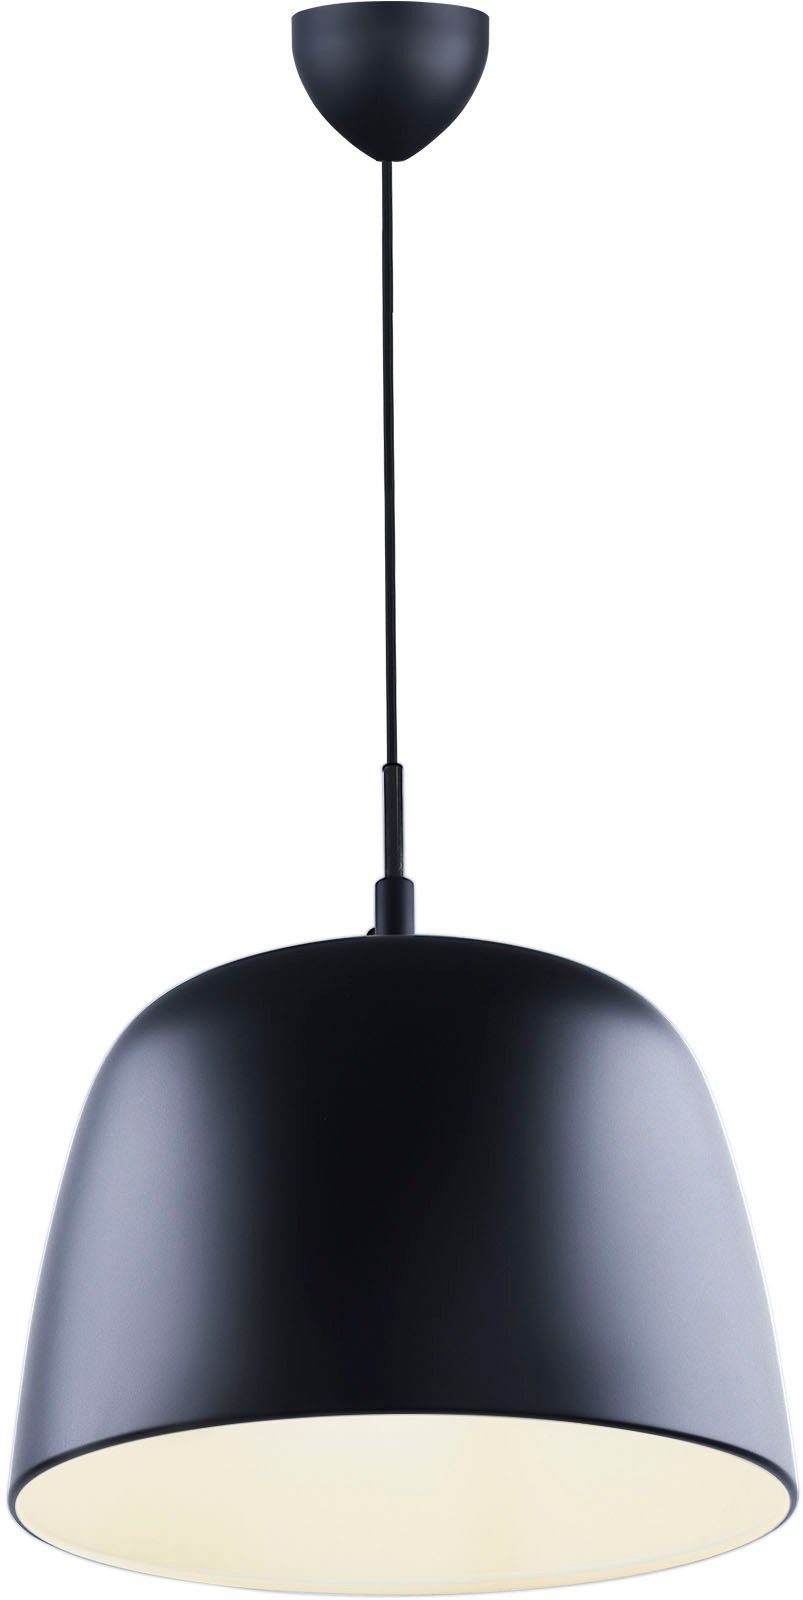 design for the people Pendelleuchte Norbi, ohne Leuchtmittel, Minimalistisches und industrielles Design, verstellbarer Lampenschirm